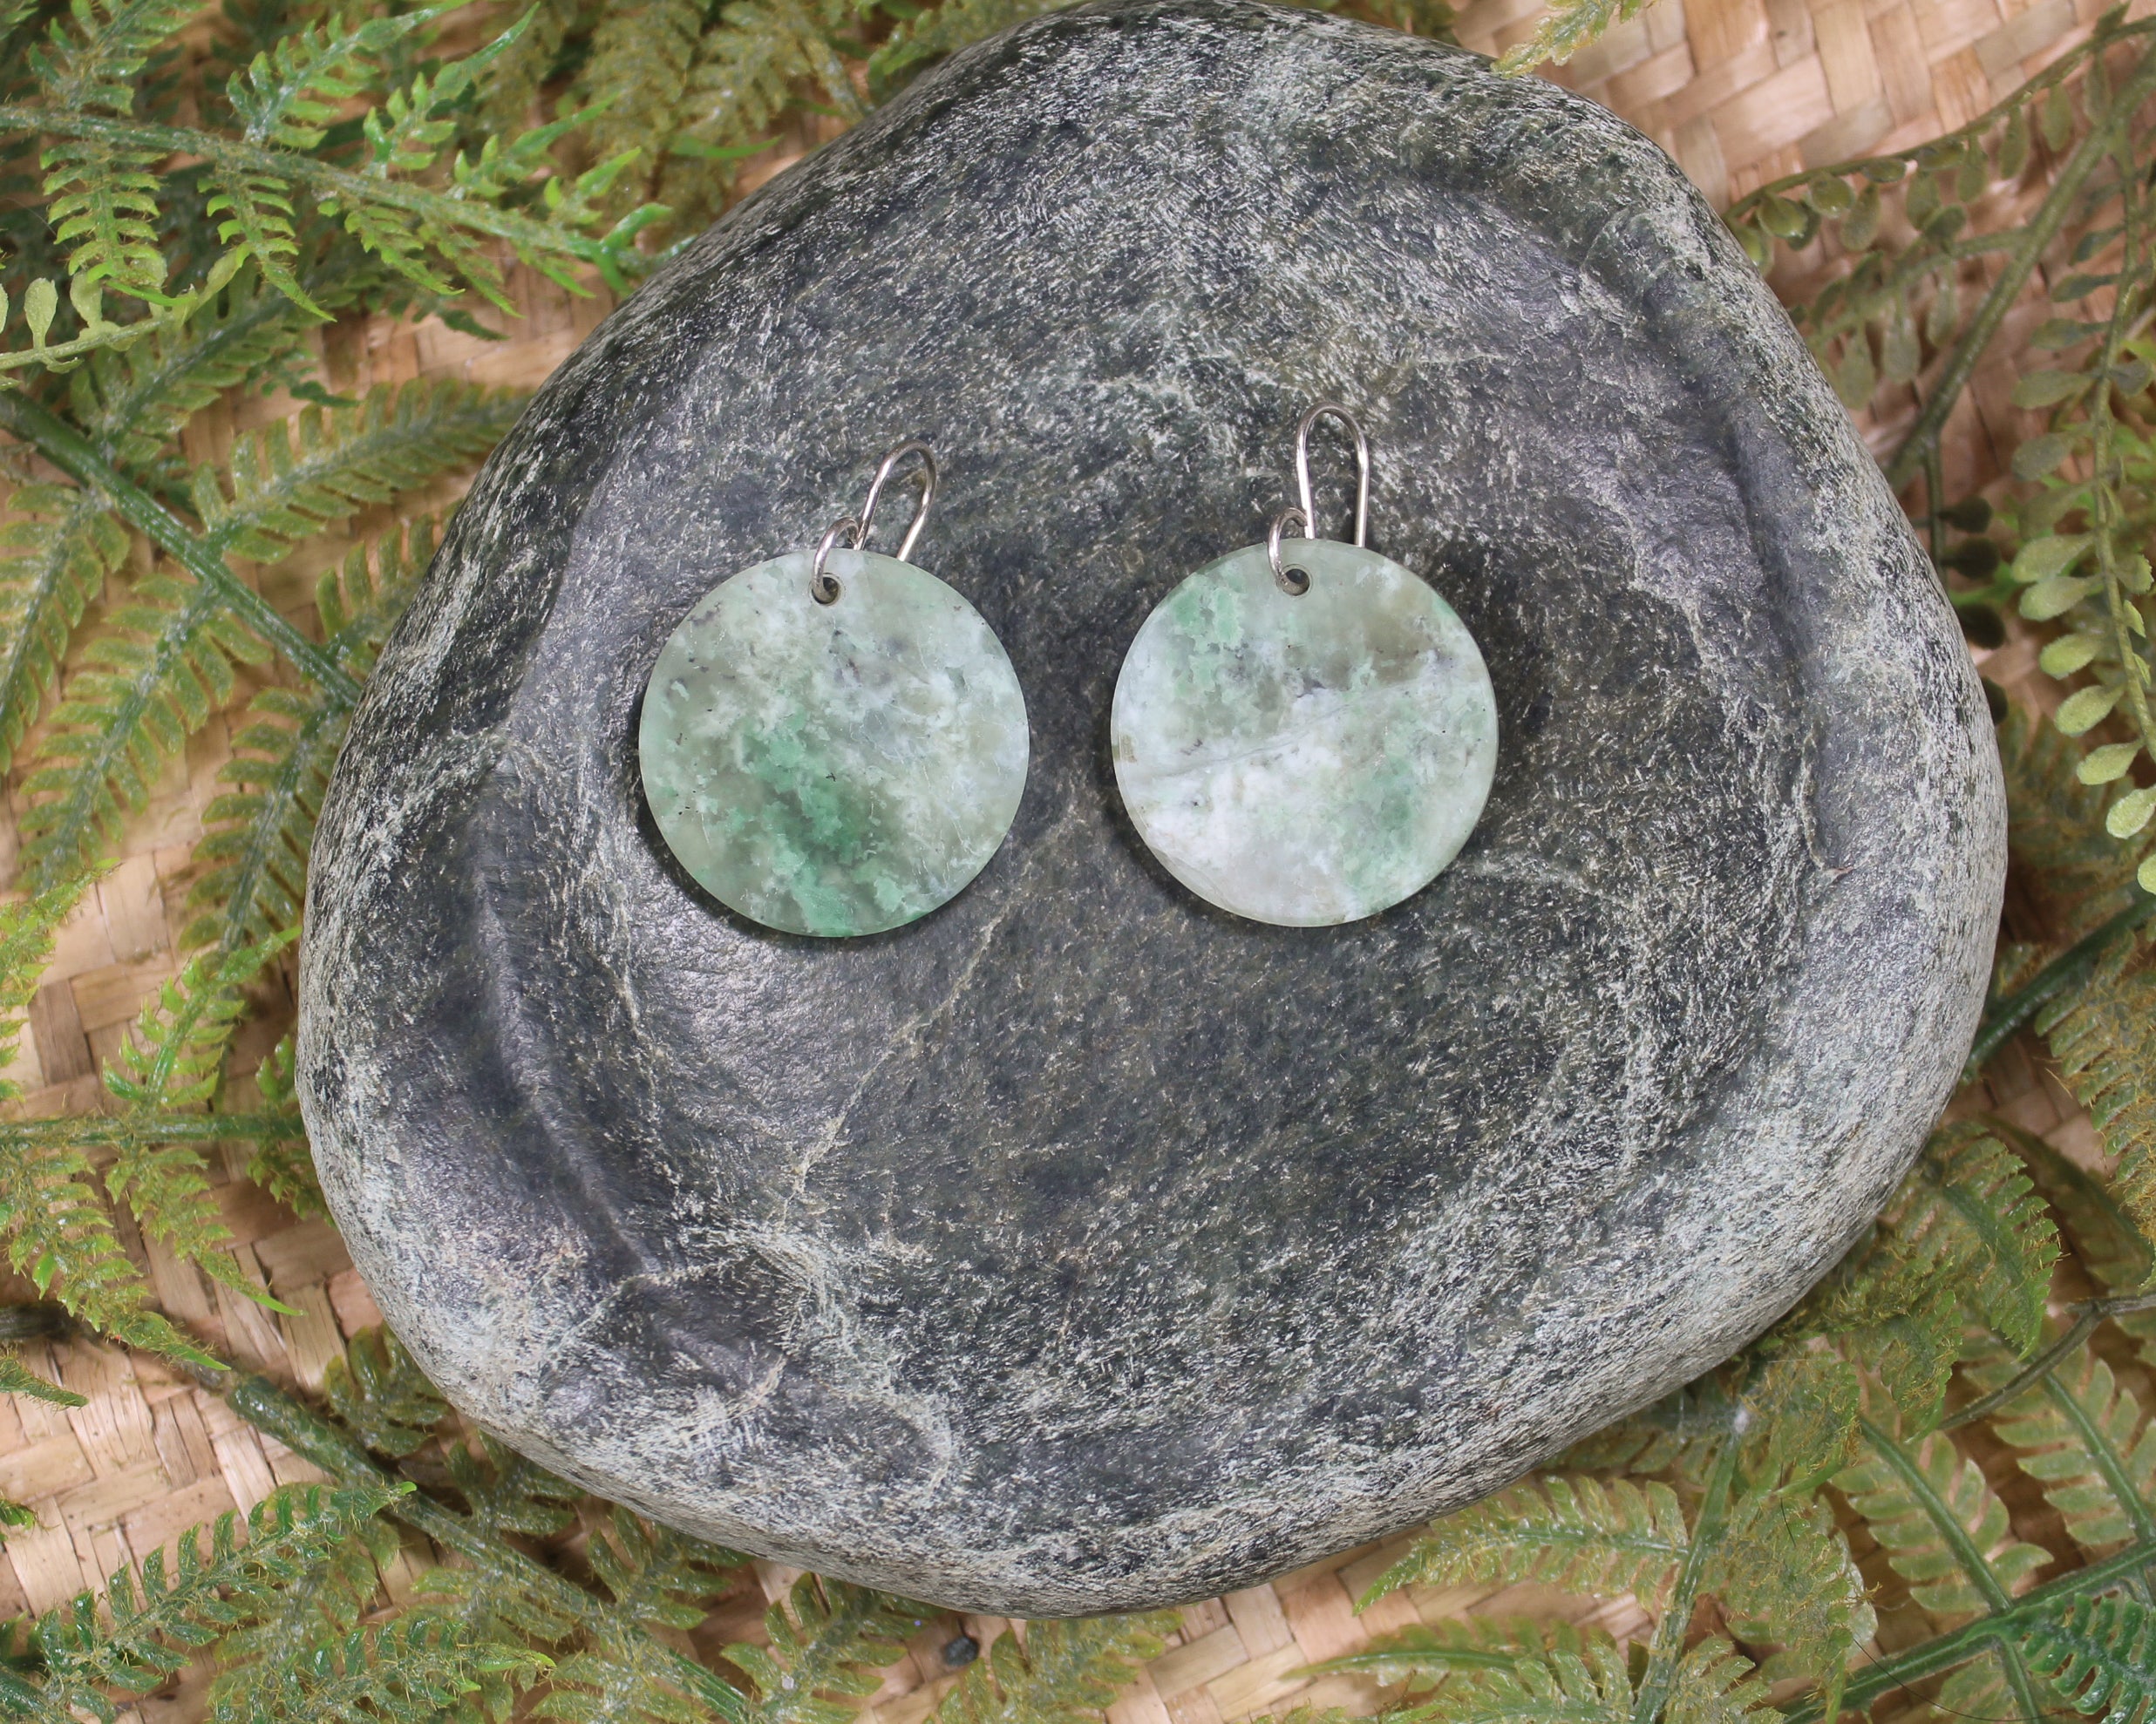 Porowhita earrings carved from Grossular Garnet